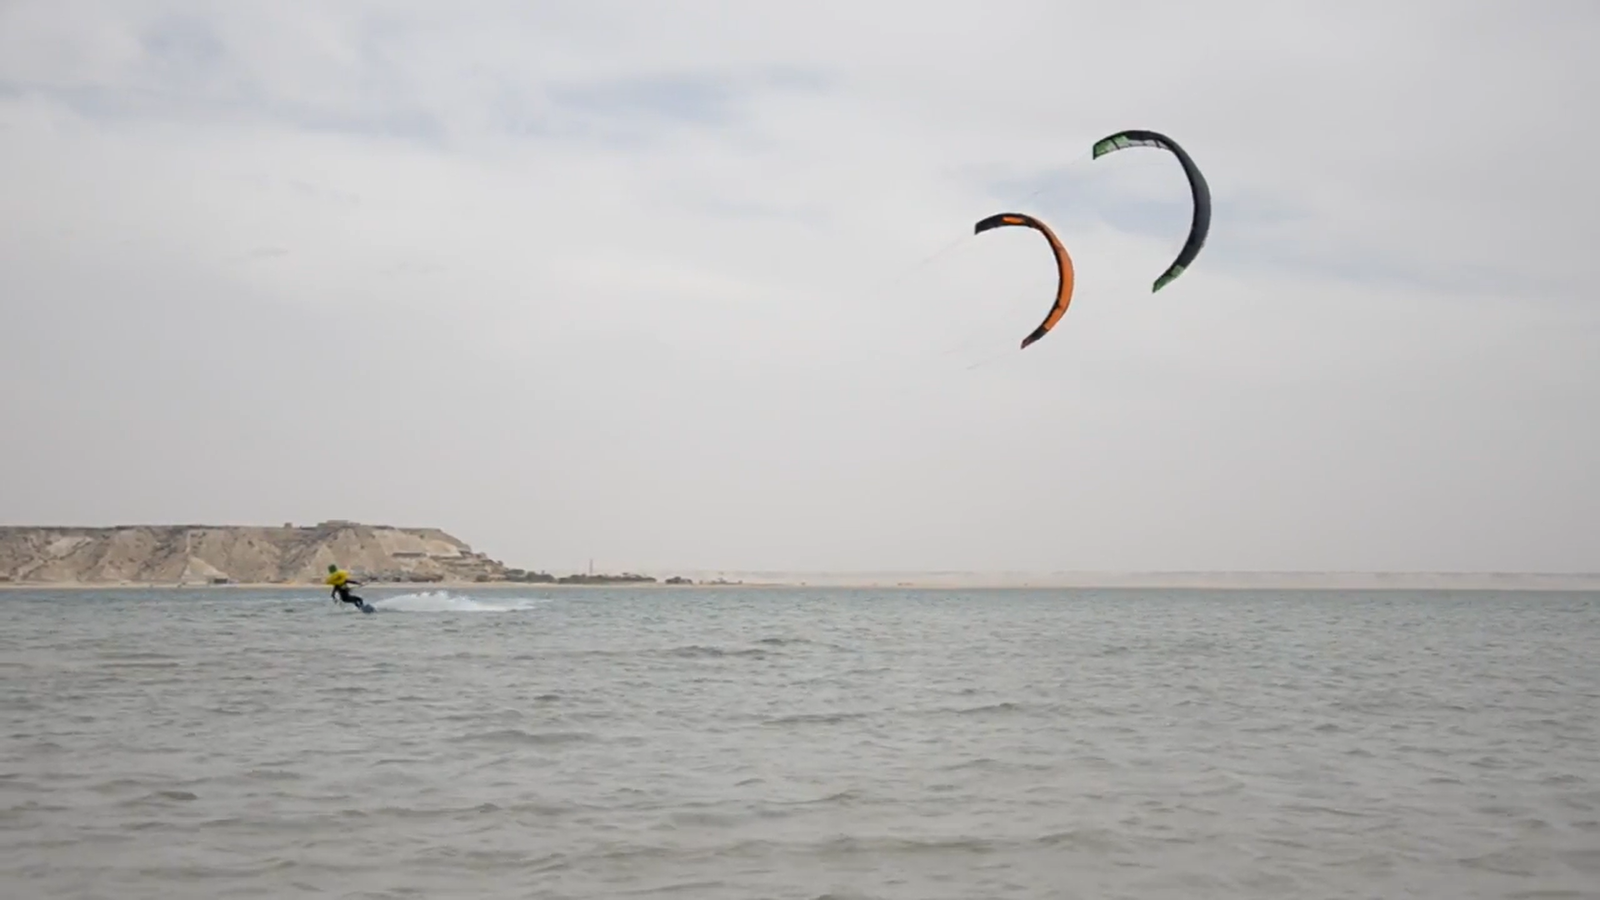 kite with 2 kites